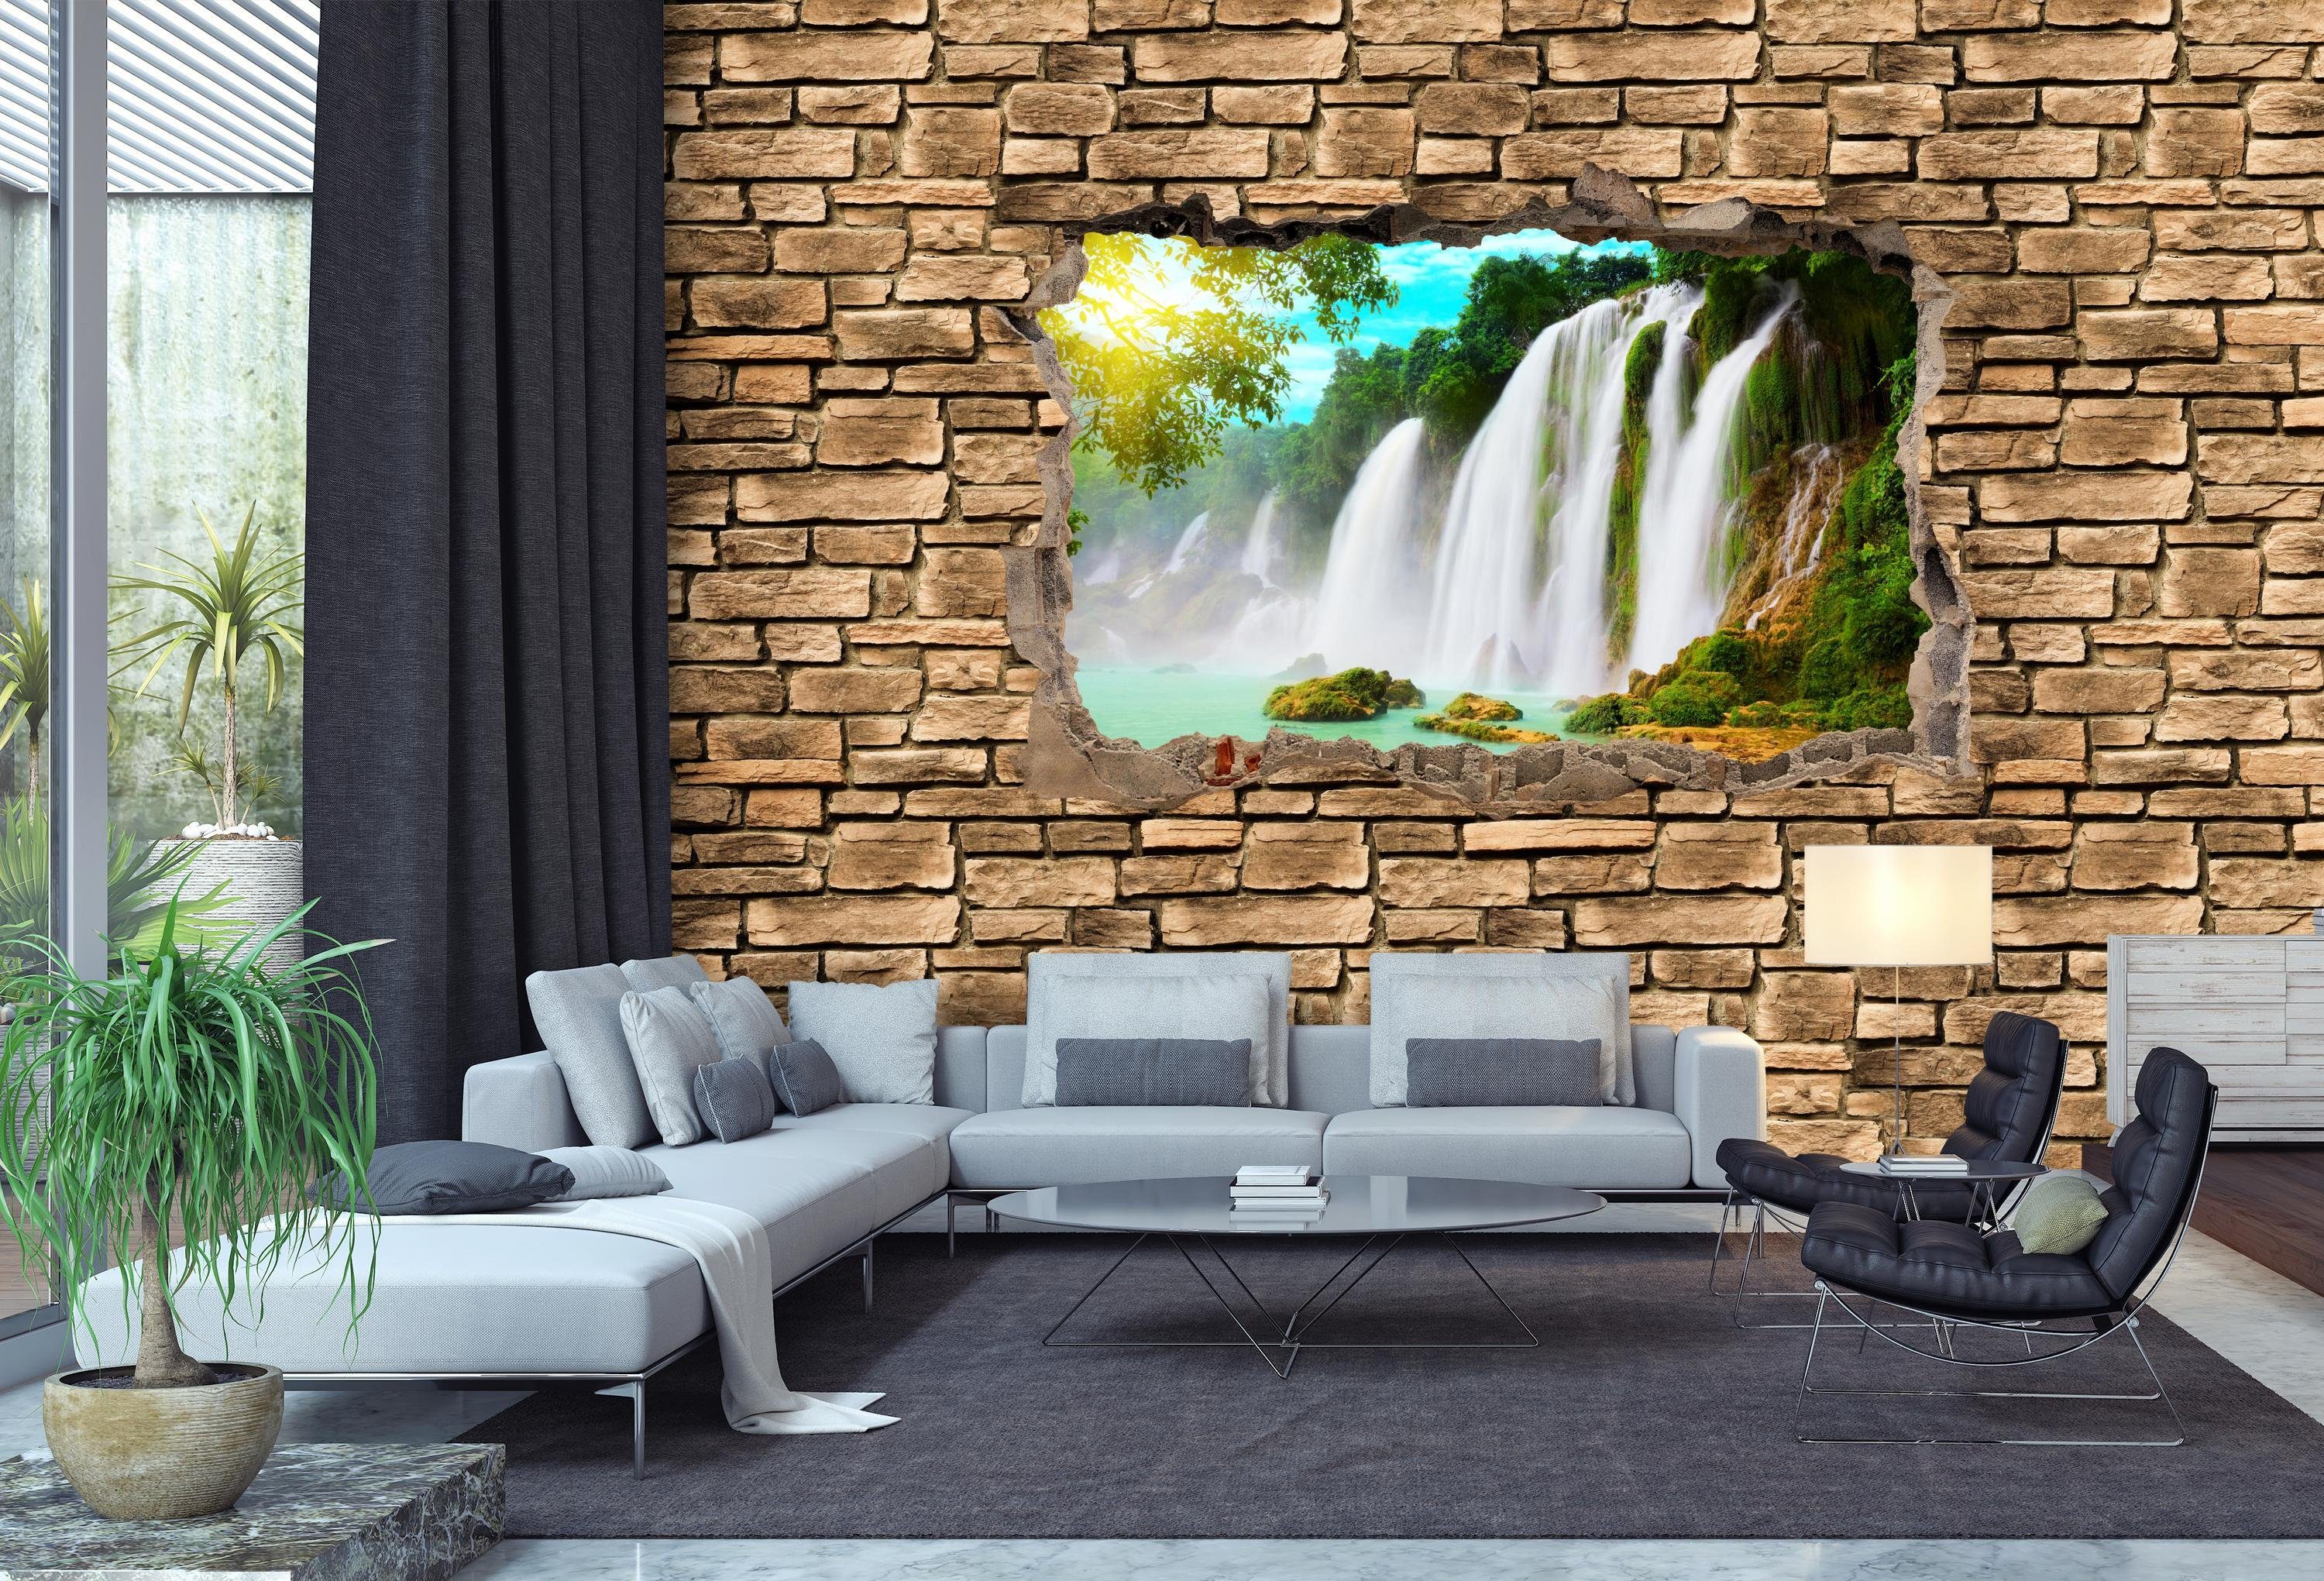 wandmotiv24 Fototapete 3D Wasserfall - Vliestapete Wandtapete, Steinmauer, glatt, matt, Motivtapete